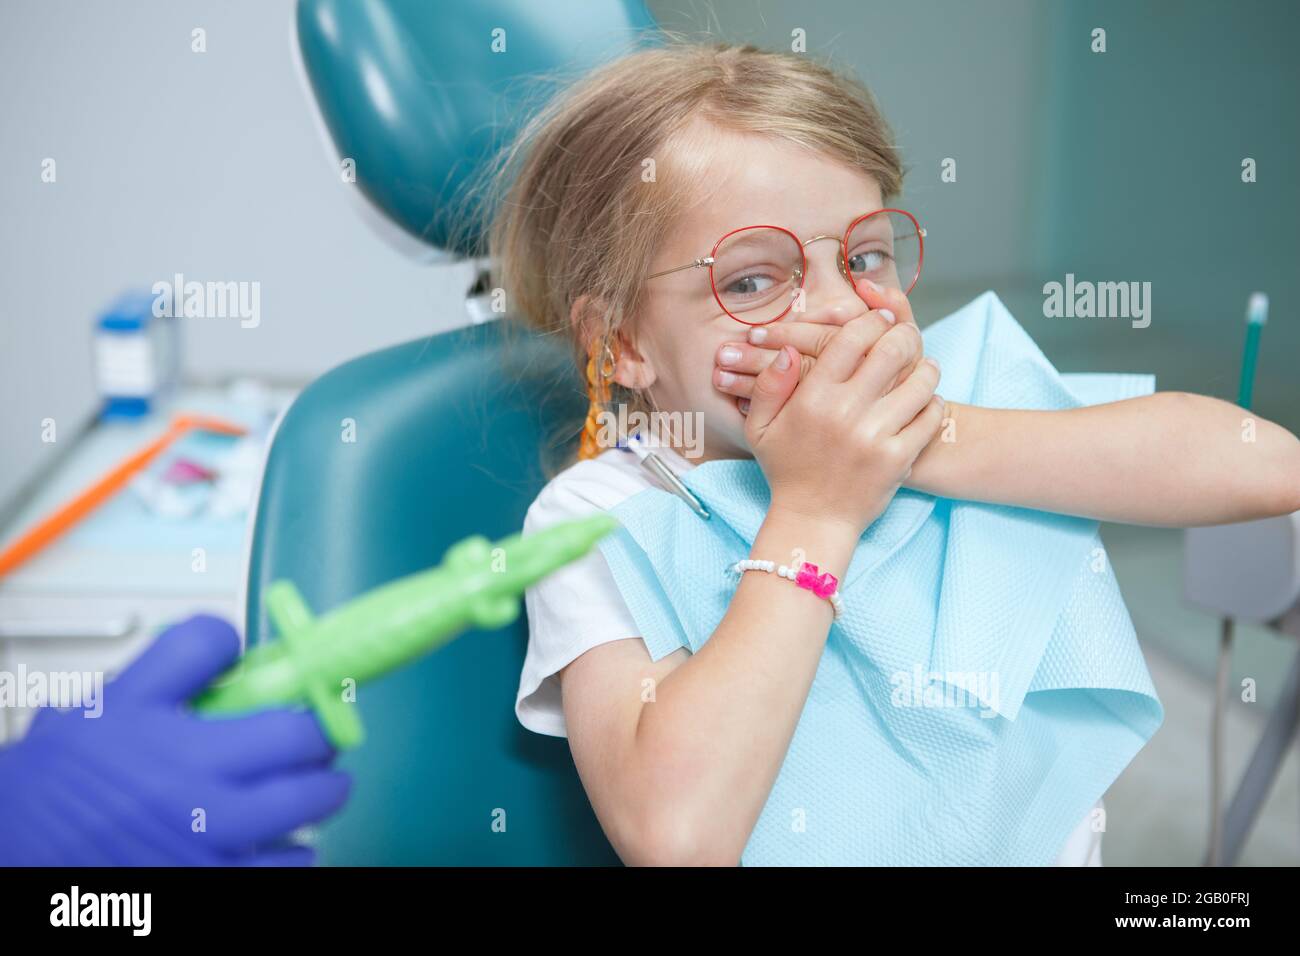 La bambina spaventa rifiutandosi di aprire la bocca per il dentista con una siringa, coprendo la bocca con le mani Foto Stock